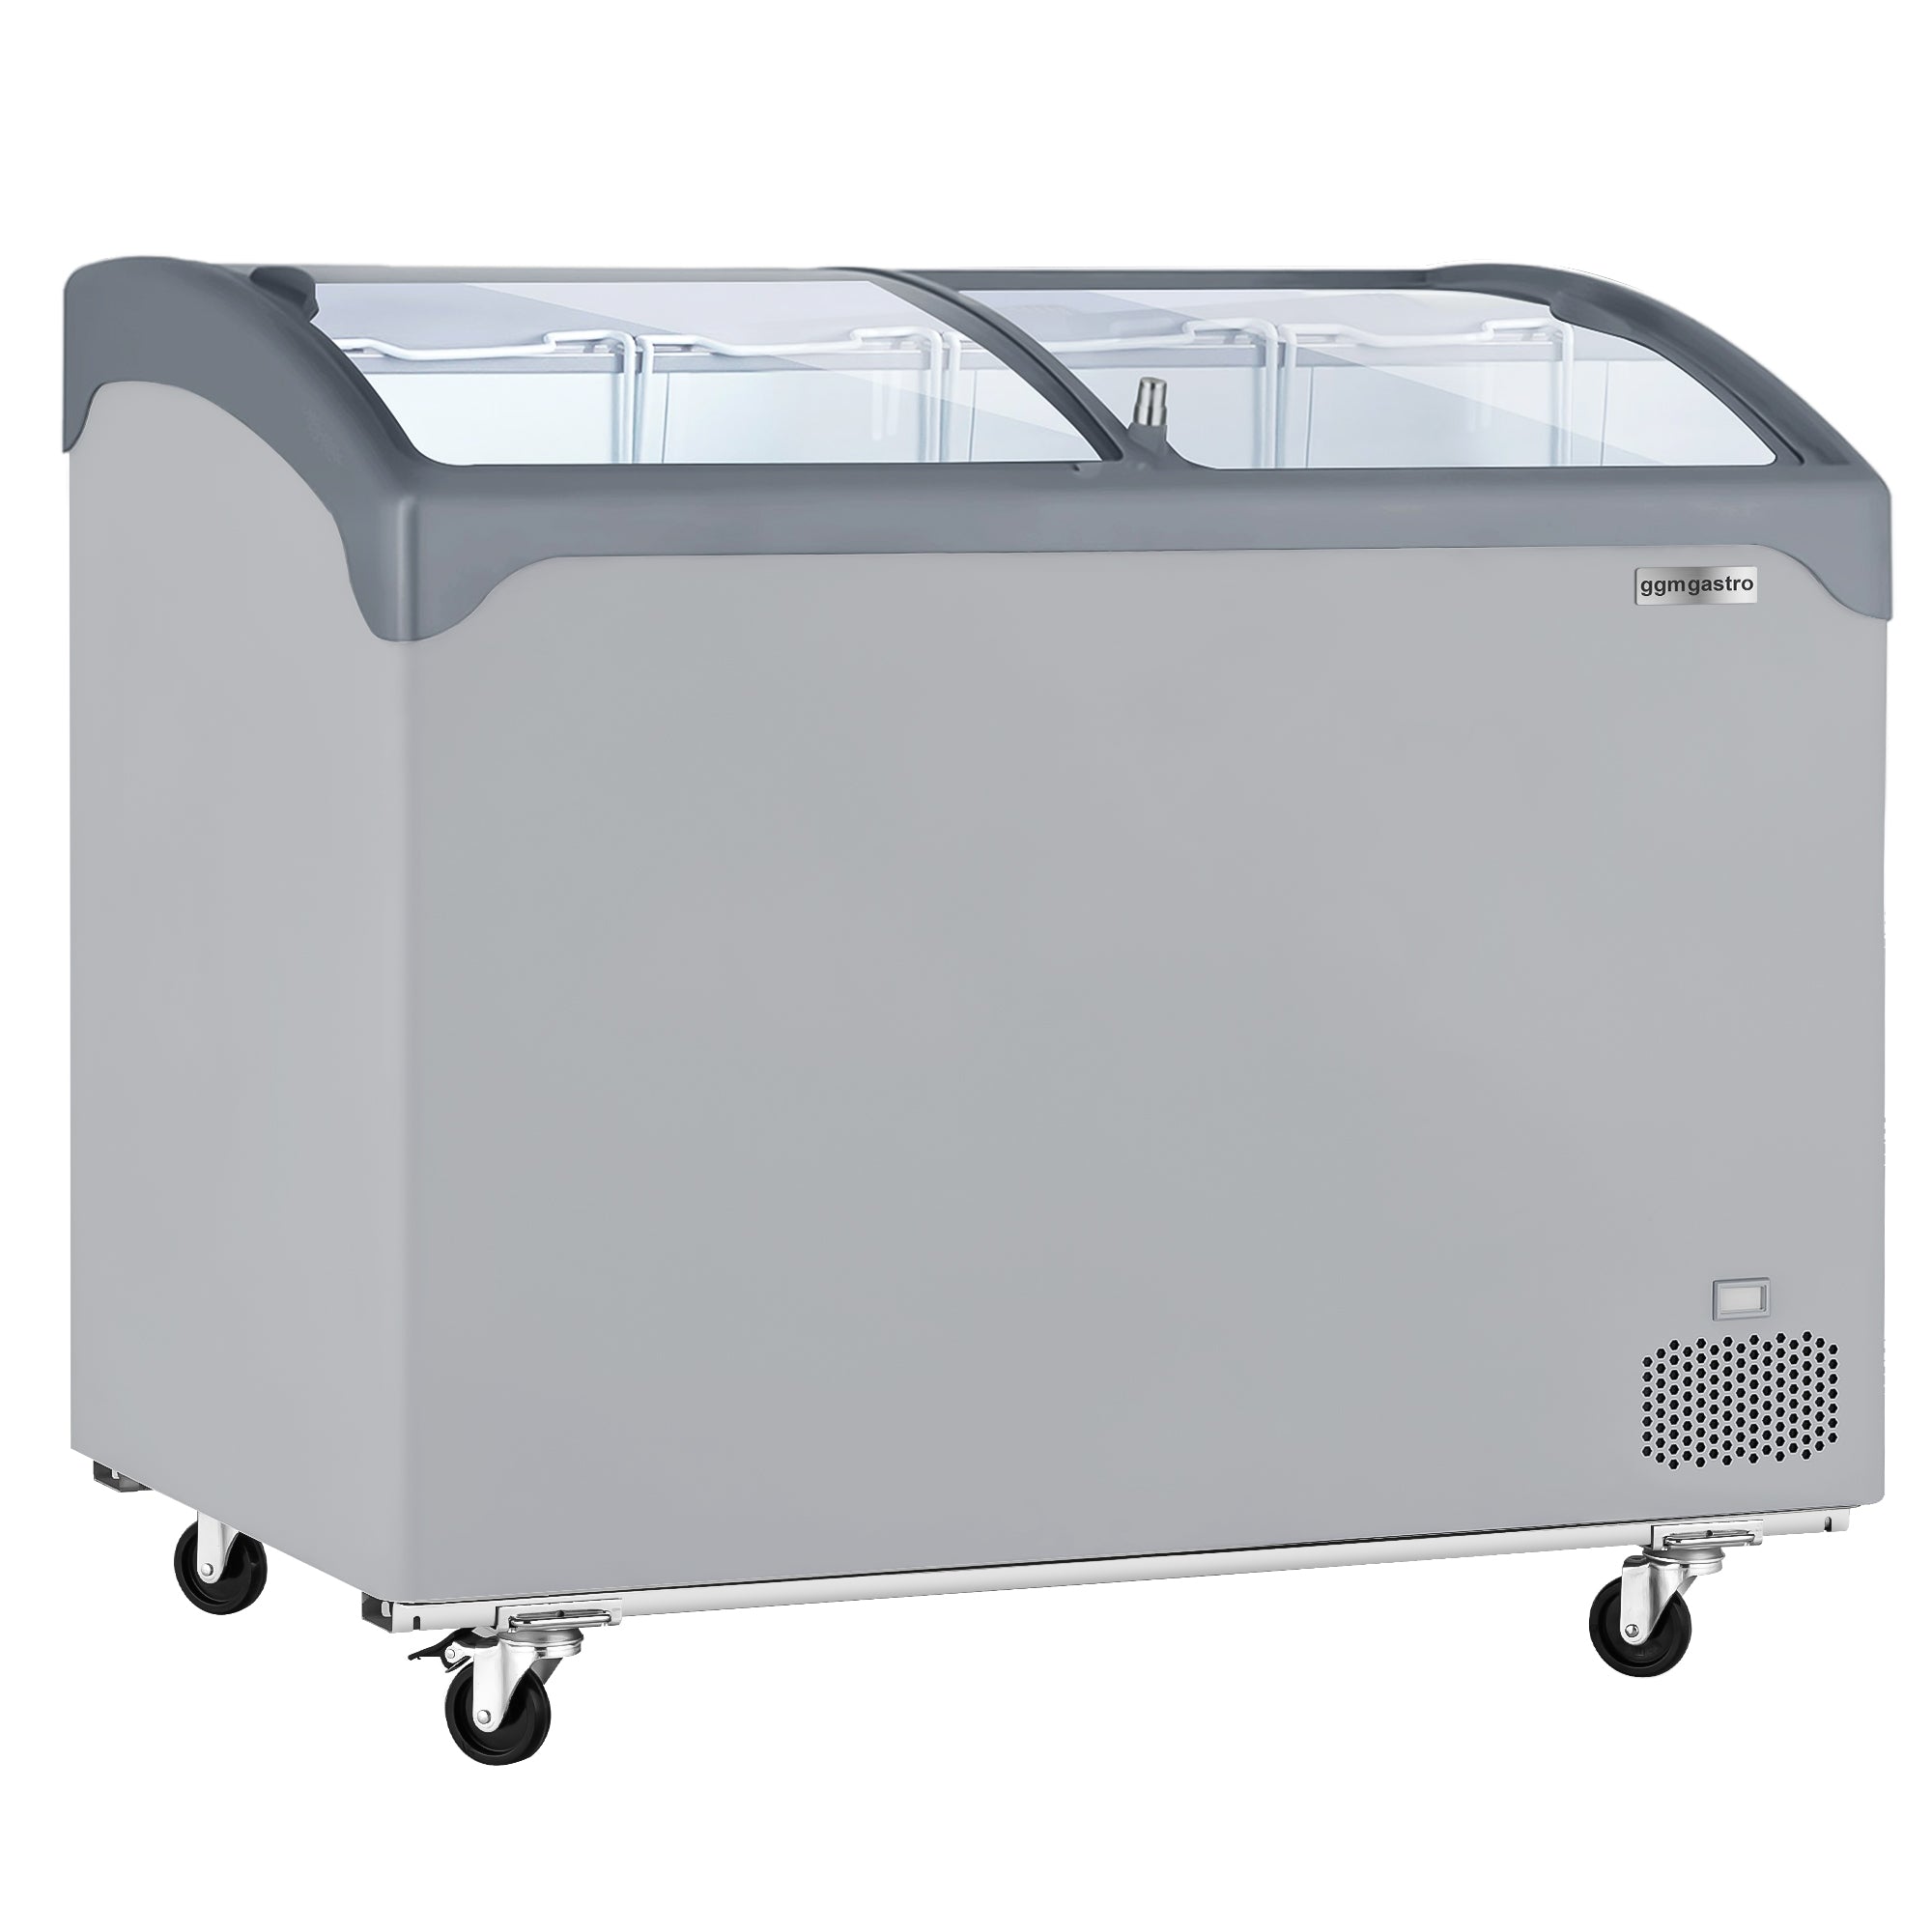 Kummefryser - 209 liter (nettoindhold) - GRÅ med glaslåg